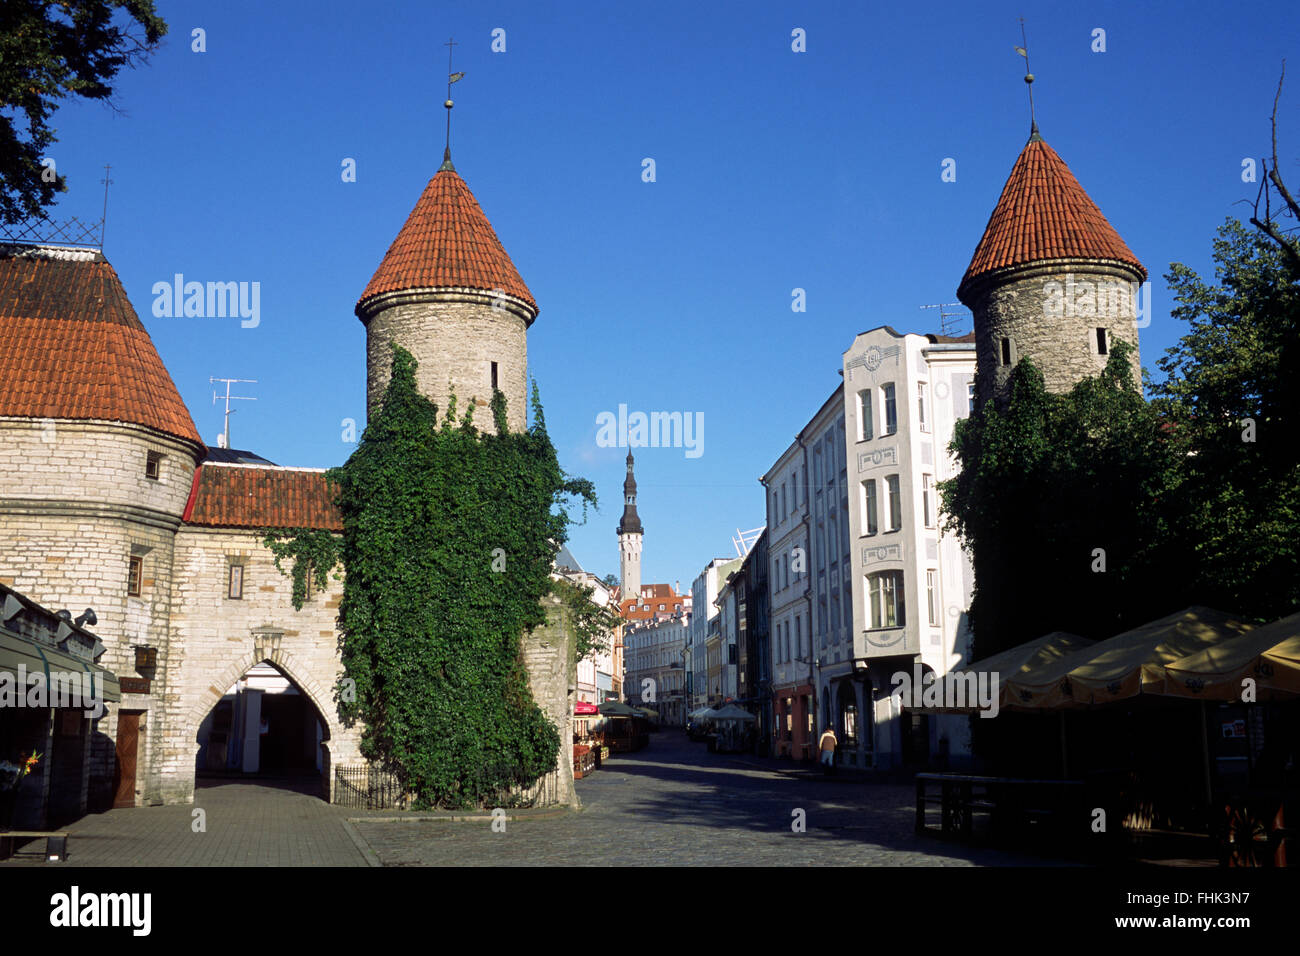 Estonia, Tallinn, old town, Viru gate Stock Photo